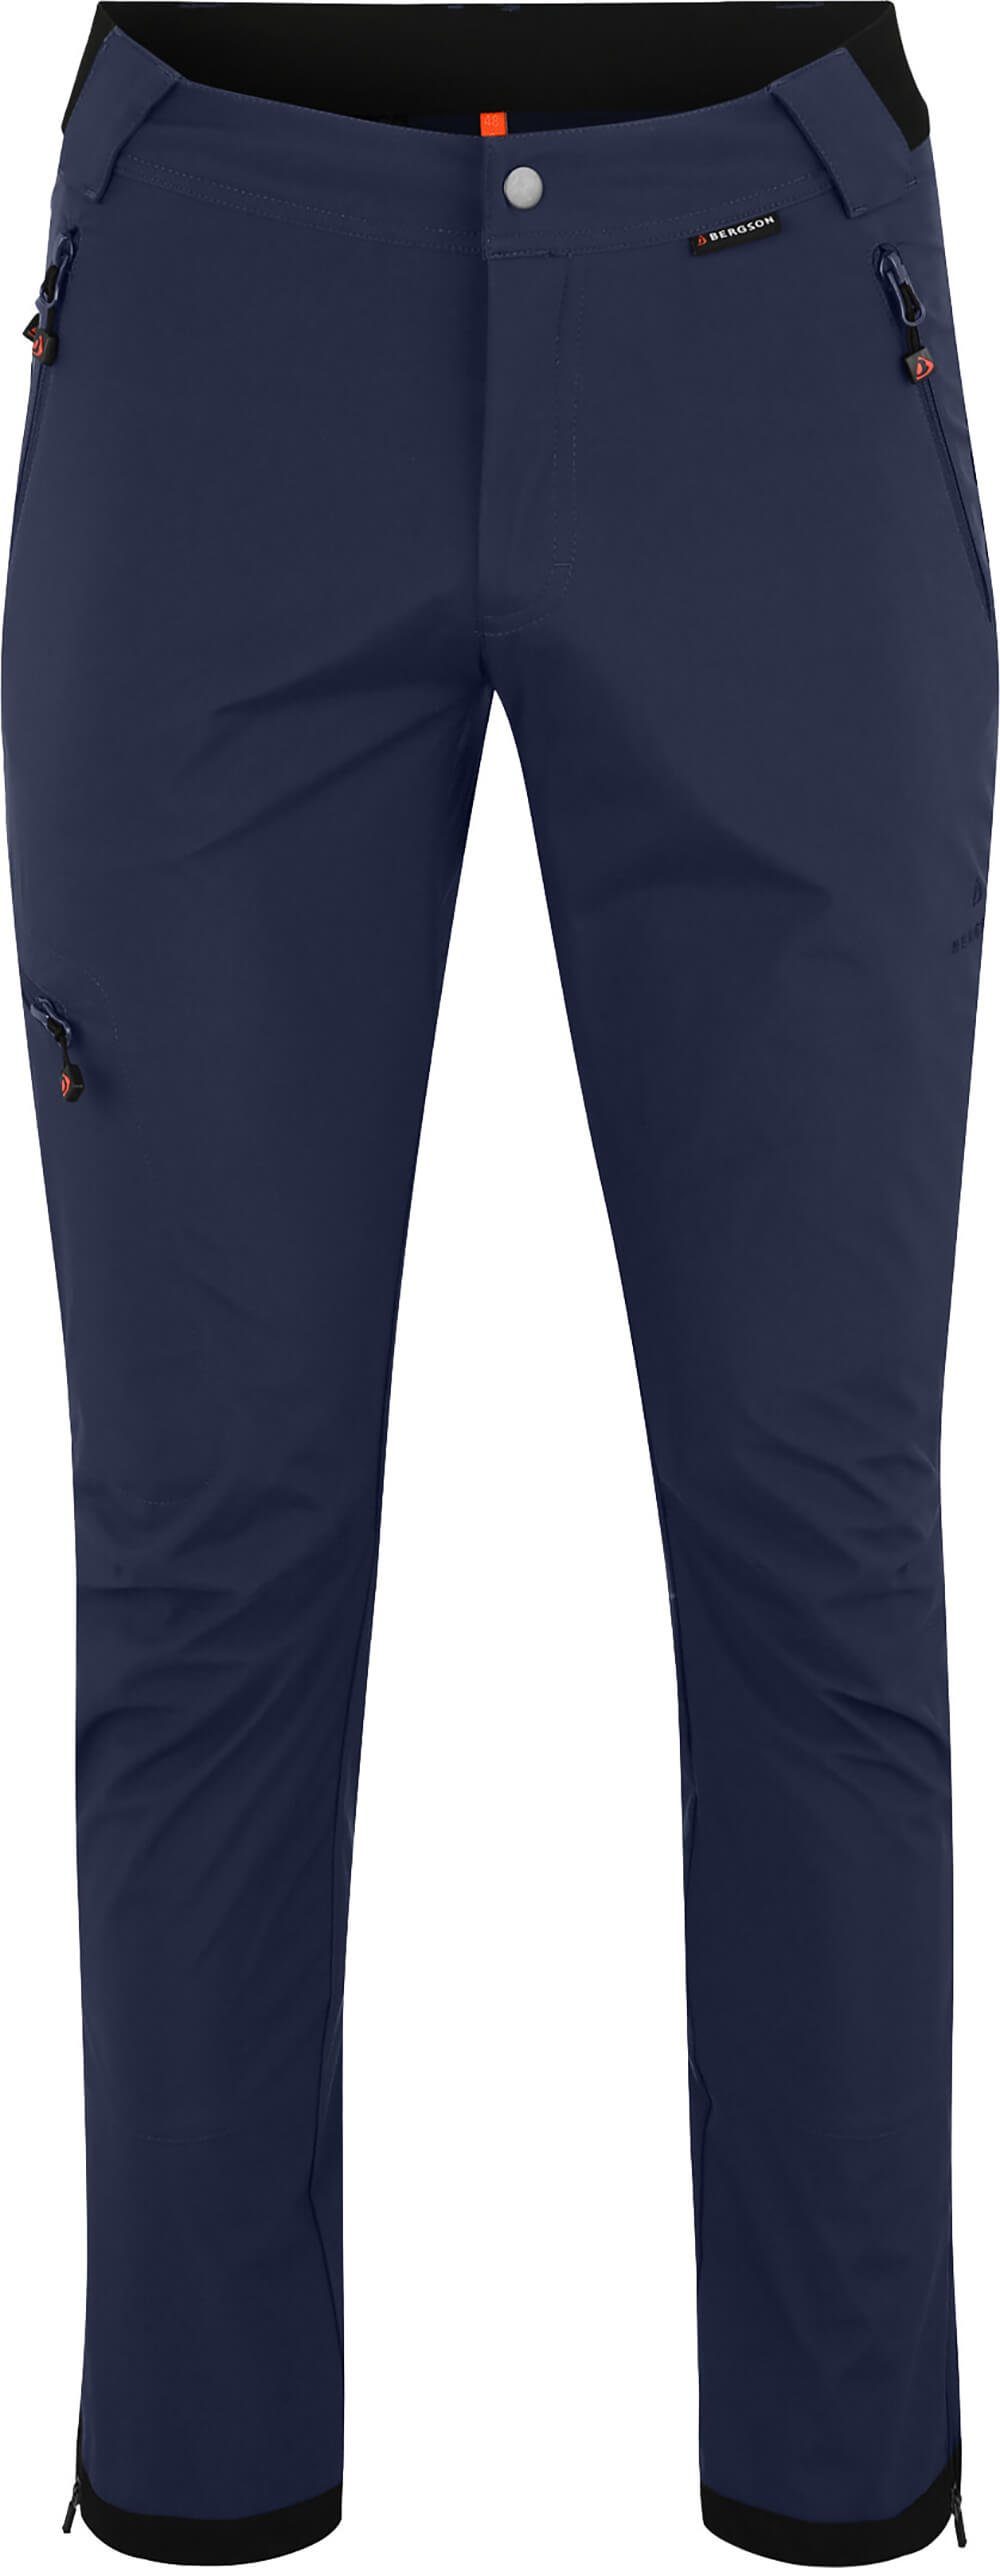 Bergson Outdoorhose KALLE COMFORT (slim) Herren Softshellhose, winddicht, strapazierfähig, Kurzgrößen, peacoat blau | Shorts